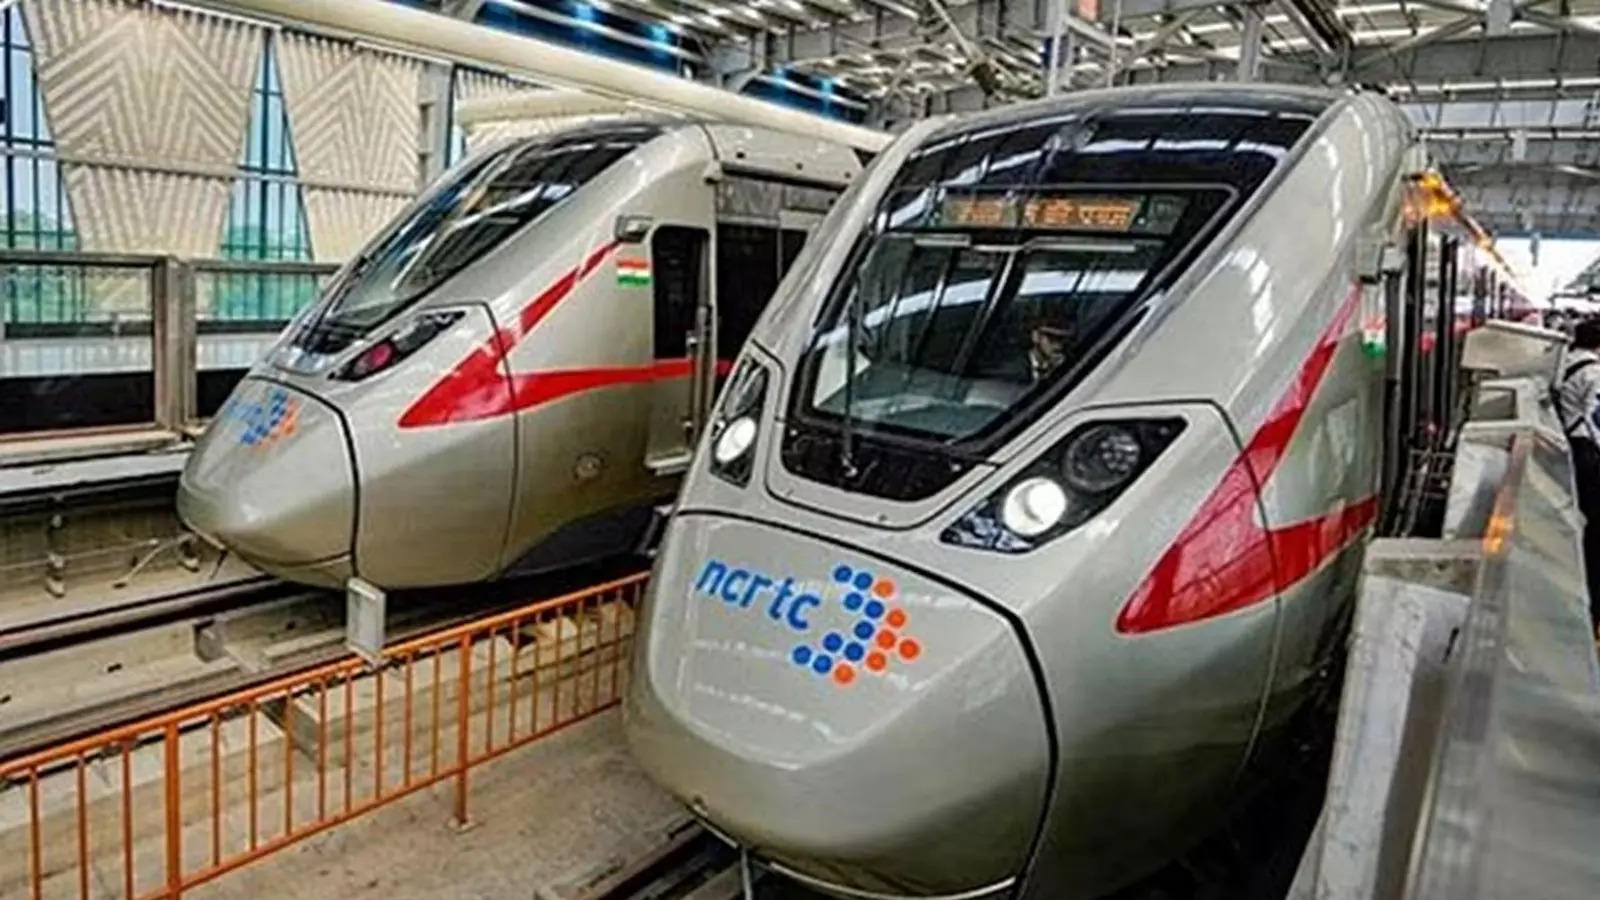 नमो भारत ट्रेन 20 मई से रात 10 बजे तक चलेगी, यात्रियों को मिलेगी सुविधा